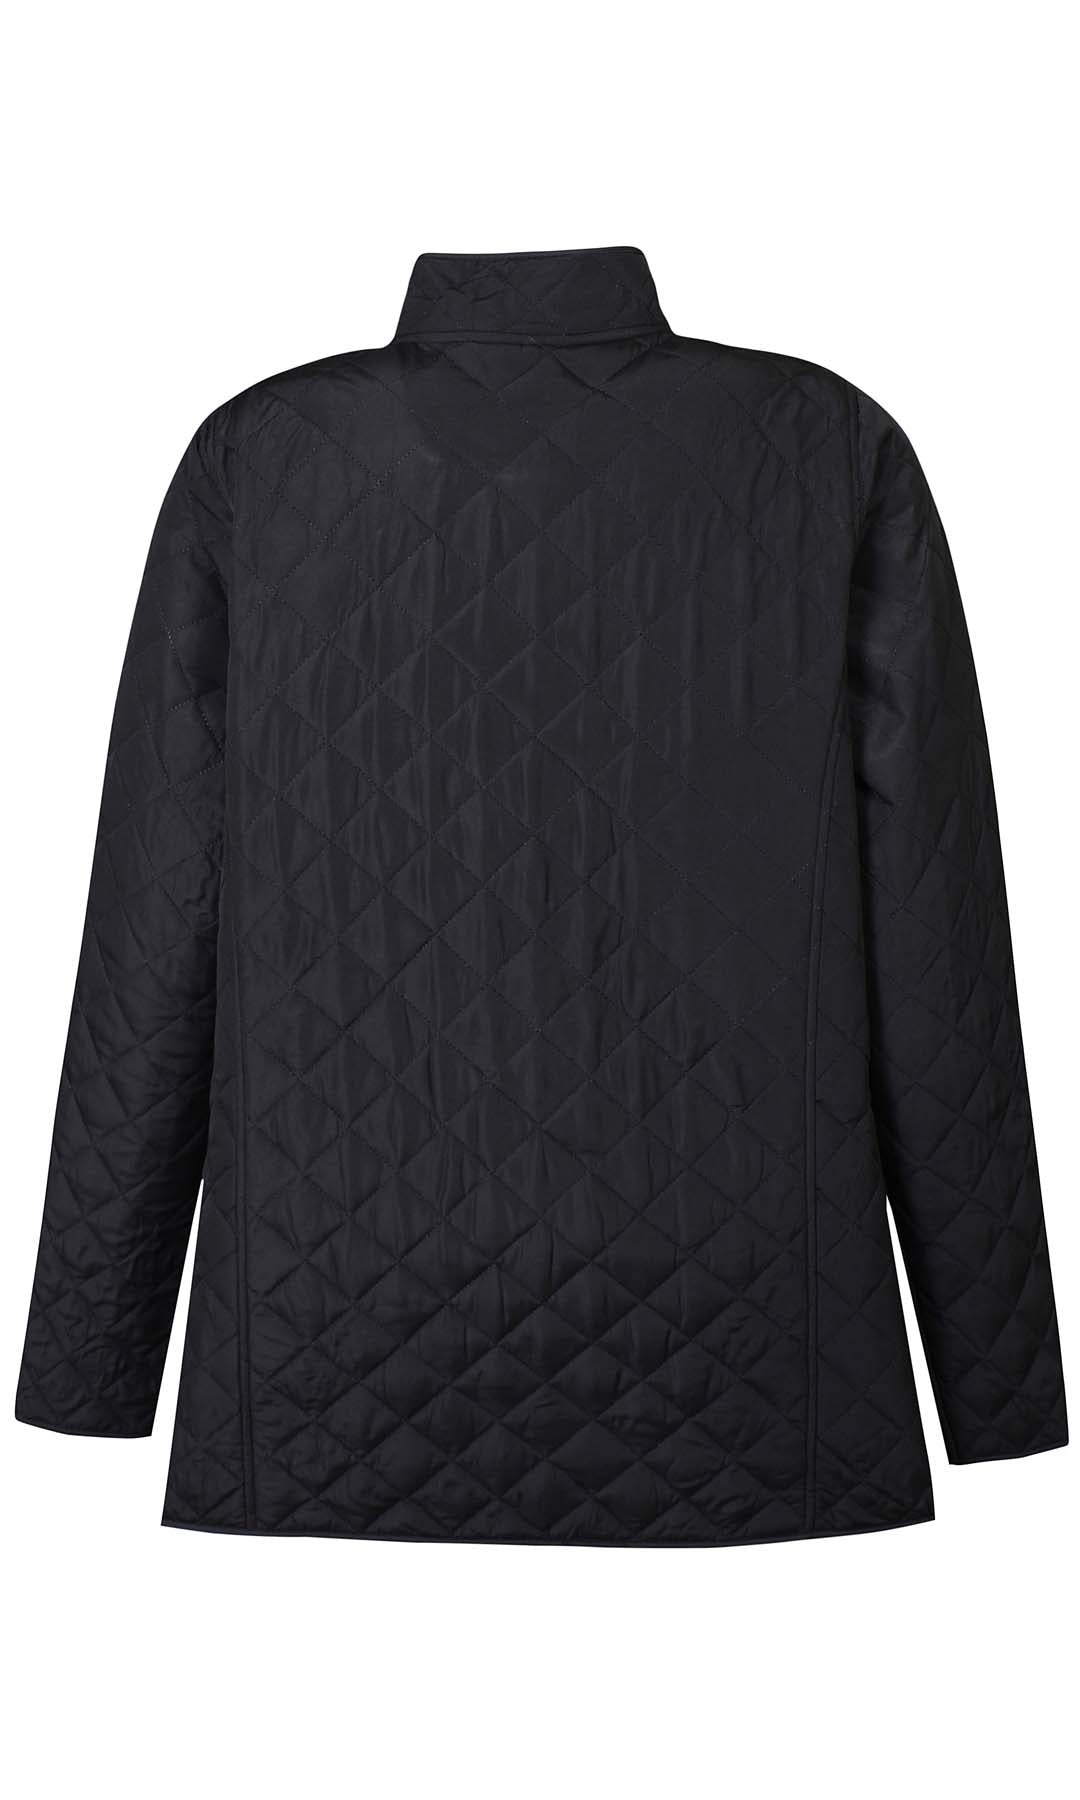 Colmar 071 - Reversible jacket - Black